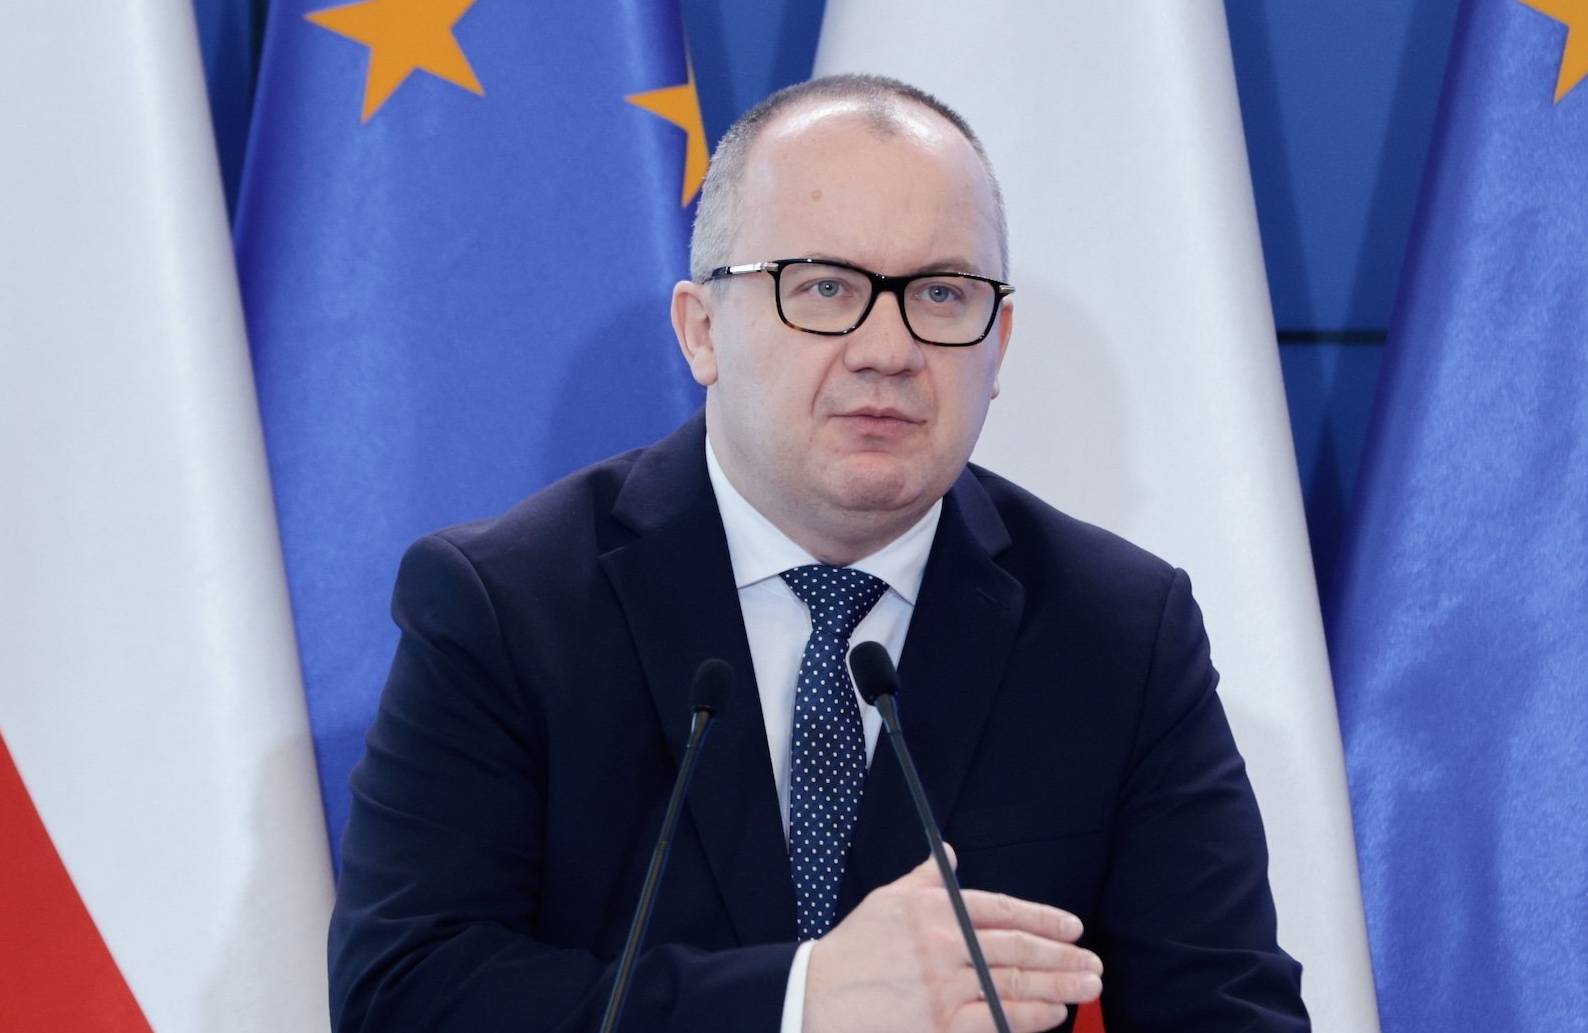 Minister Adam Bodnar przemawia do mikrofonu na tle polskich i unijnych flag. Ma na sobie ciemny garnitur i granatowy krawat w kropki.